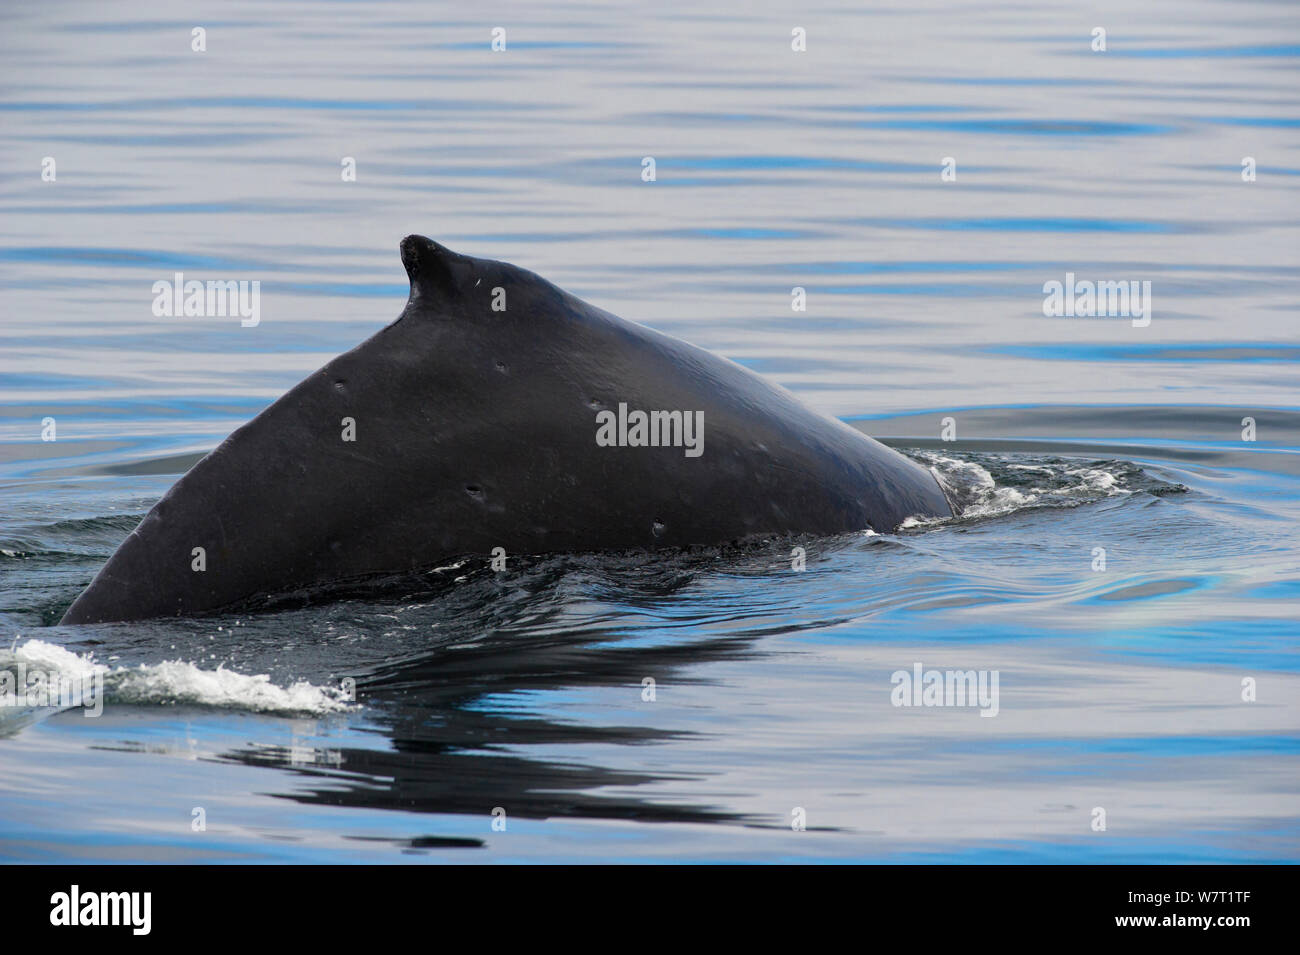 La ballena jorobada (Megaptera novaeangliae) Infracción aflora con aleta dorsal visible, Johnstone Strait, cerca de Telegraph Cove, en la costa oriental de la isla de Vancouver, British Columbia, Canadá, en julio. Foto de stock